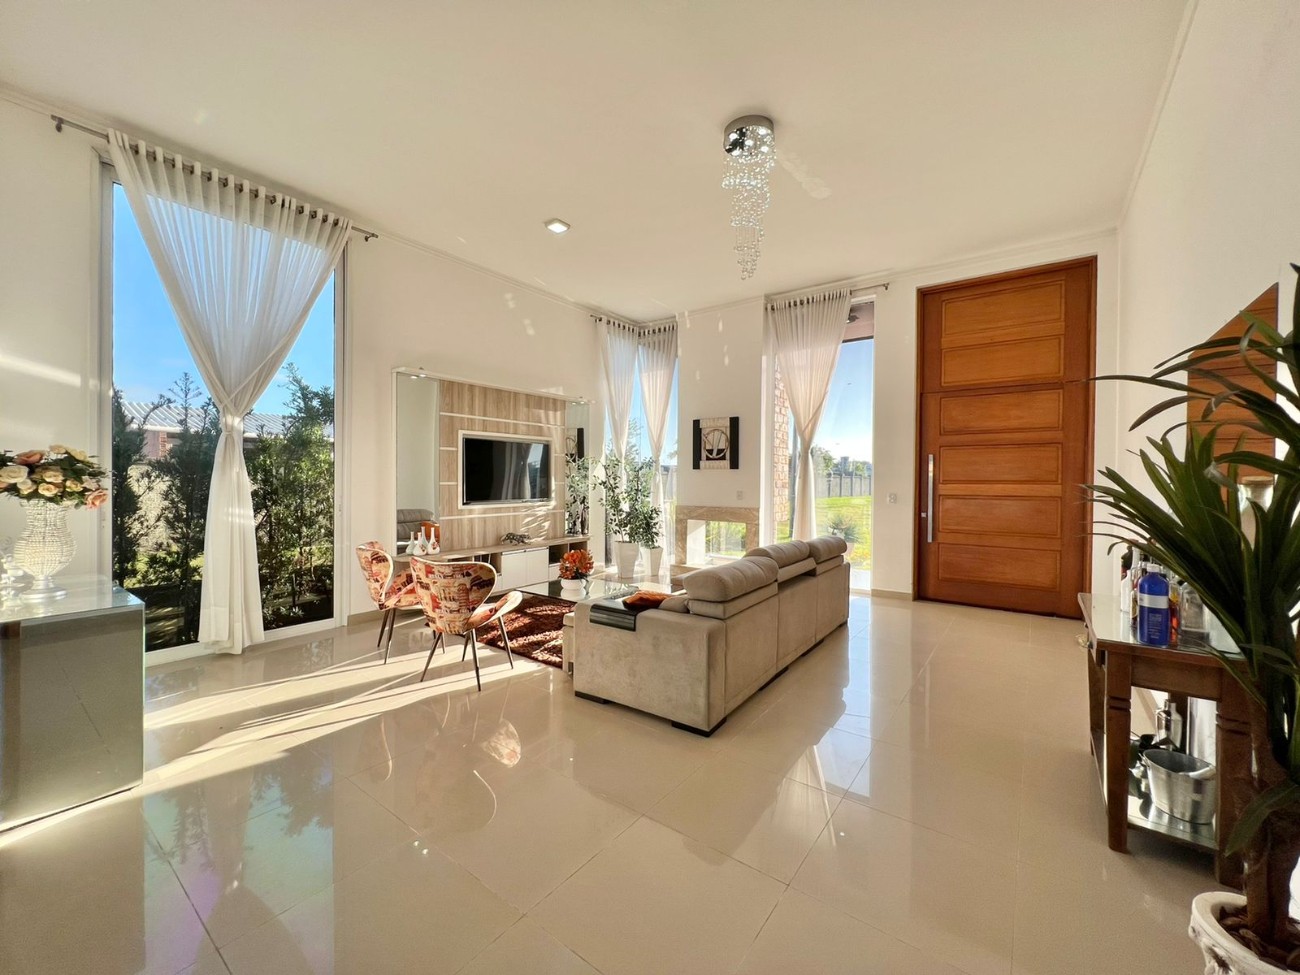 Casa em Condomínio 3 dormitórios para venda em Capão da Canoa | Ref.: 397